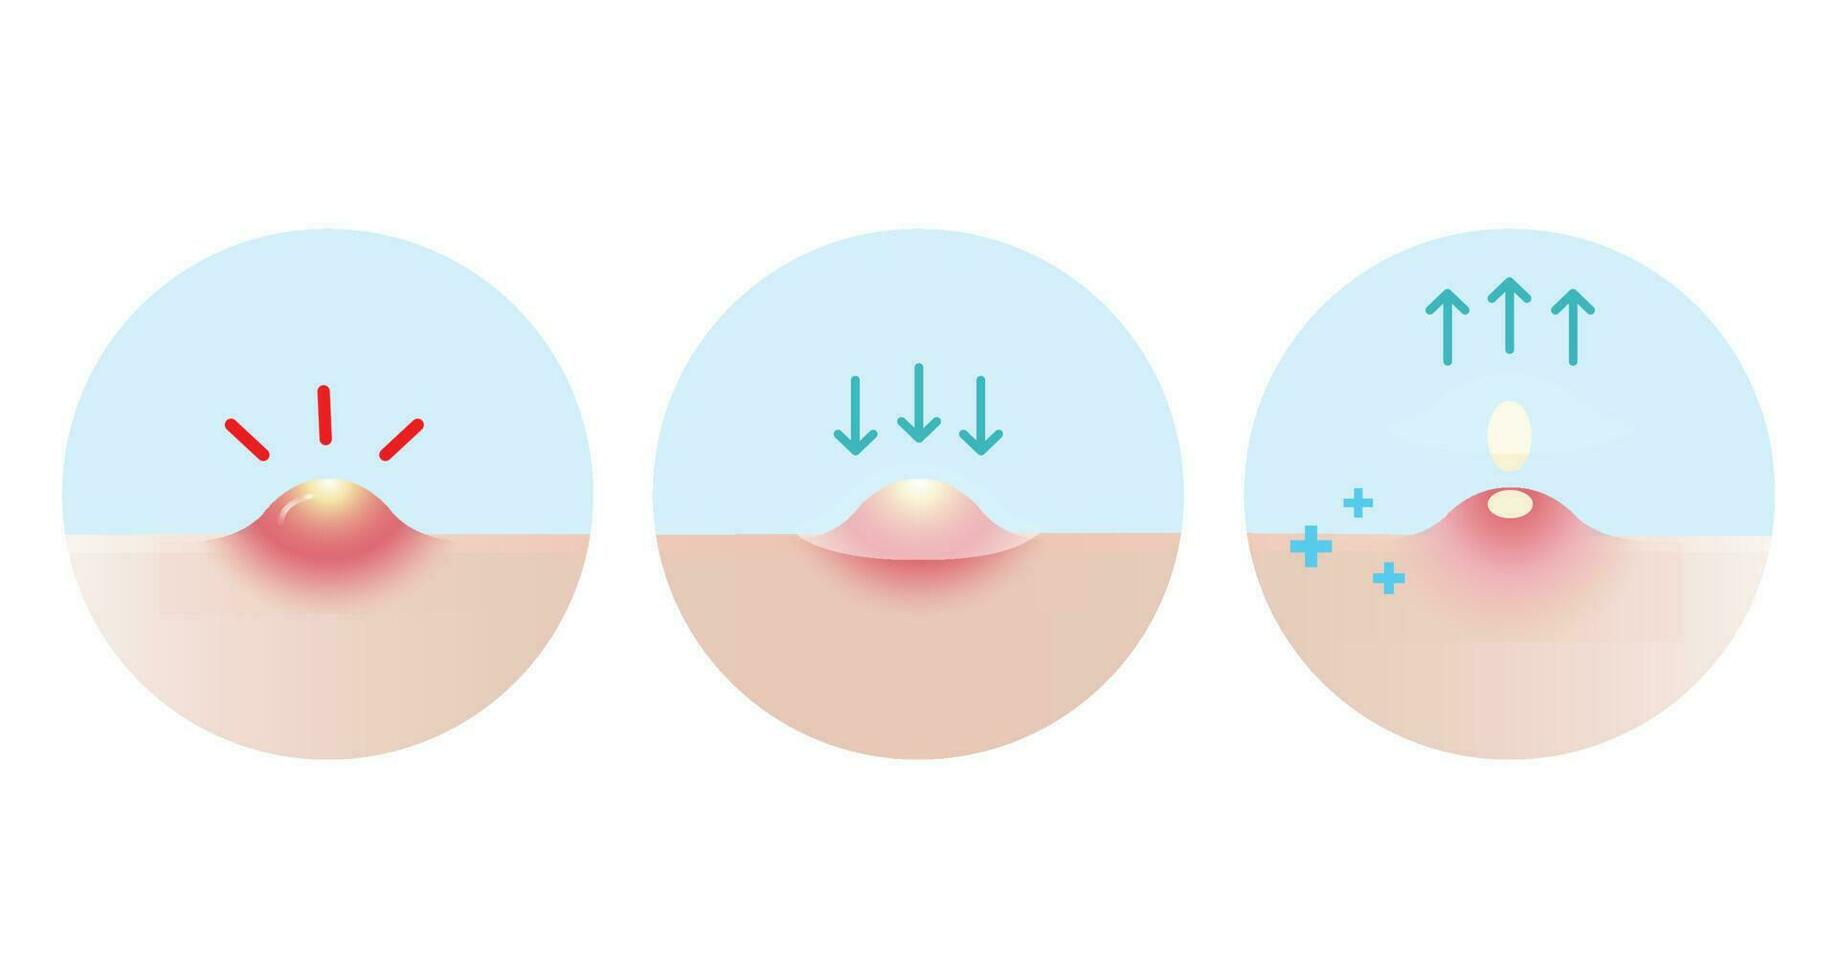 riktning för använda sig av acne finne lappa för inflammatorisk acne vektor ikon uppsättning illustration på vit bakgrund. på vilket sätt till använda sig av, steg för använda sig av acne lappa absorberande pustule på hud ansikte. hud vård begrepp.